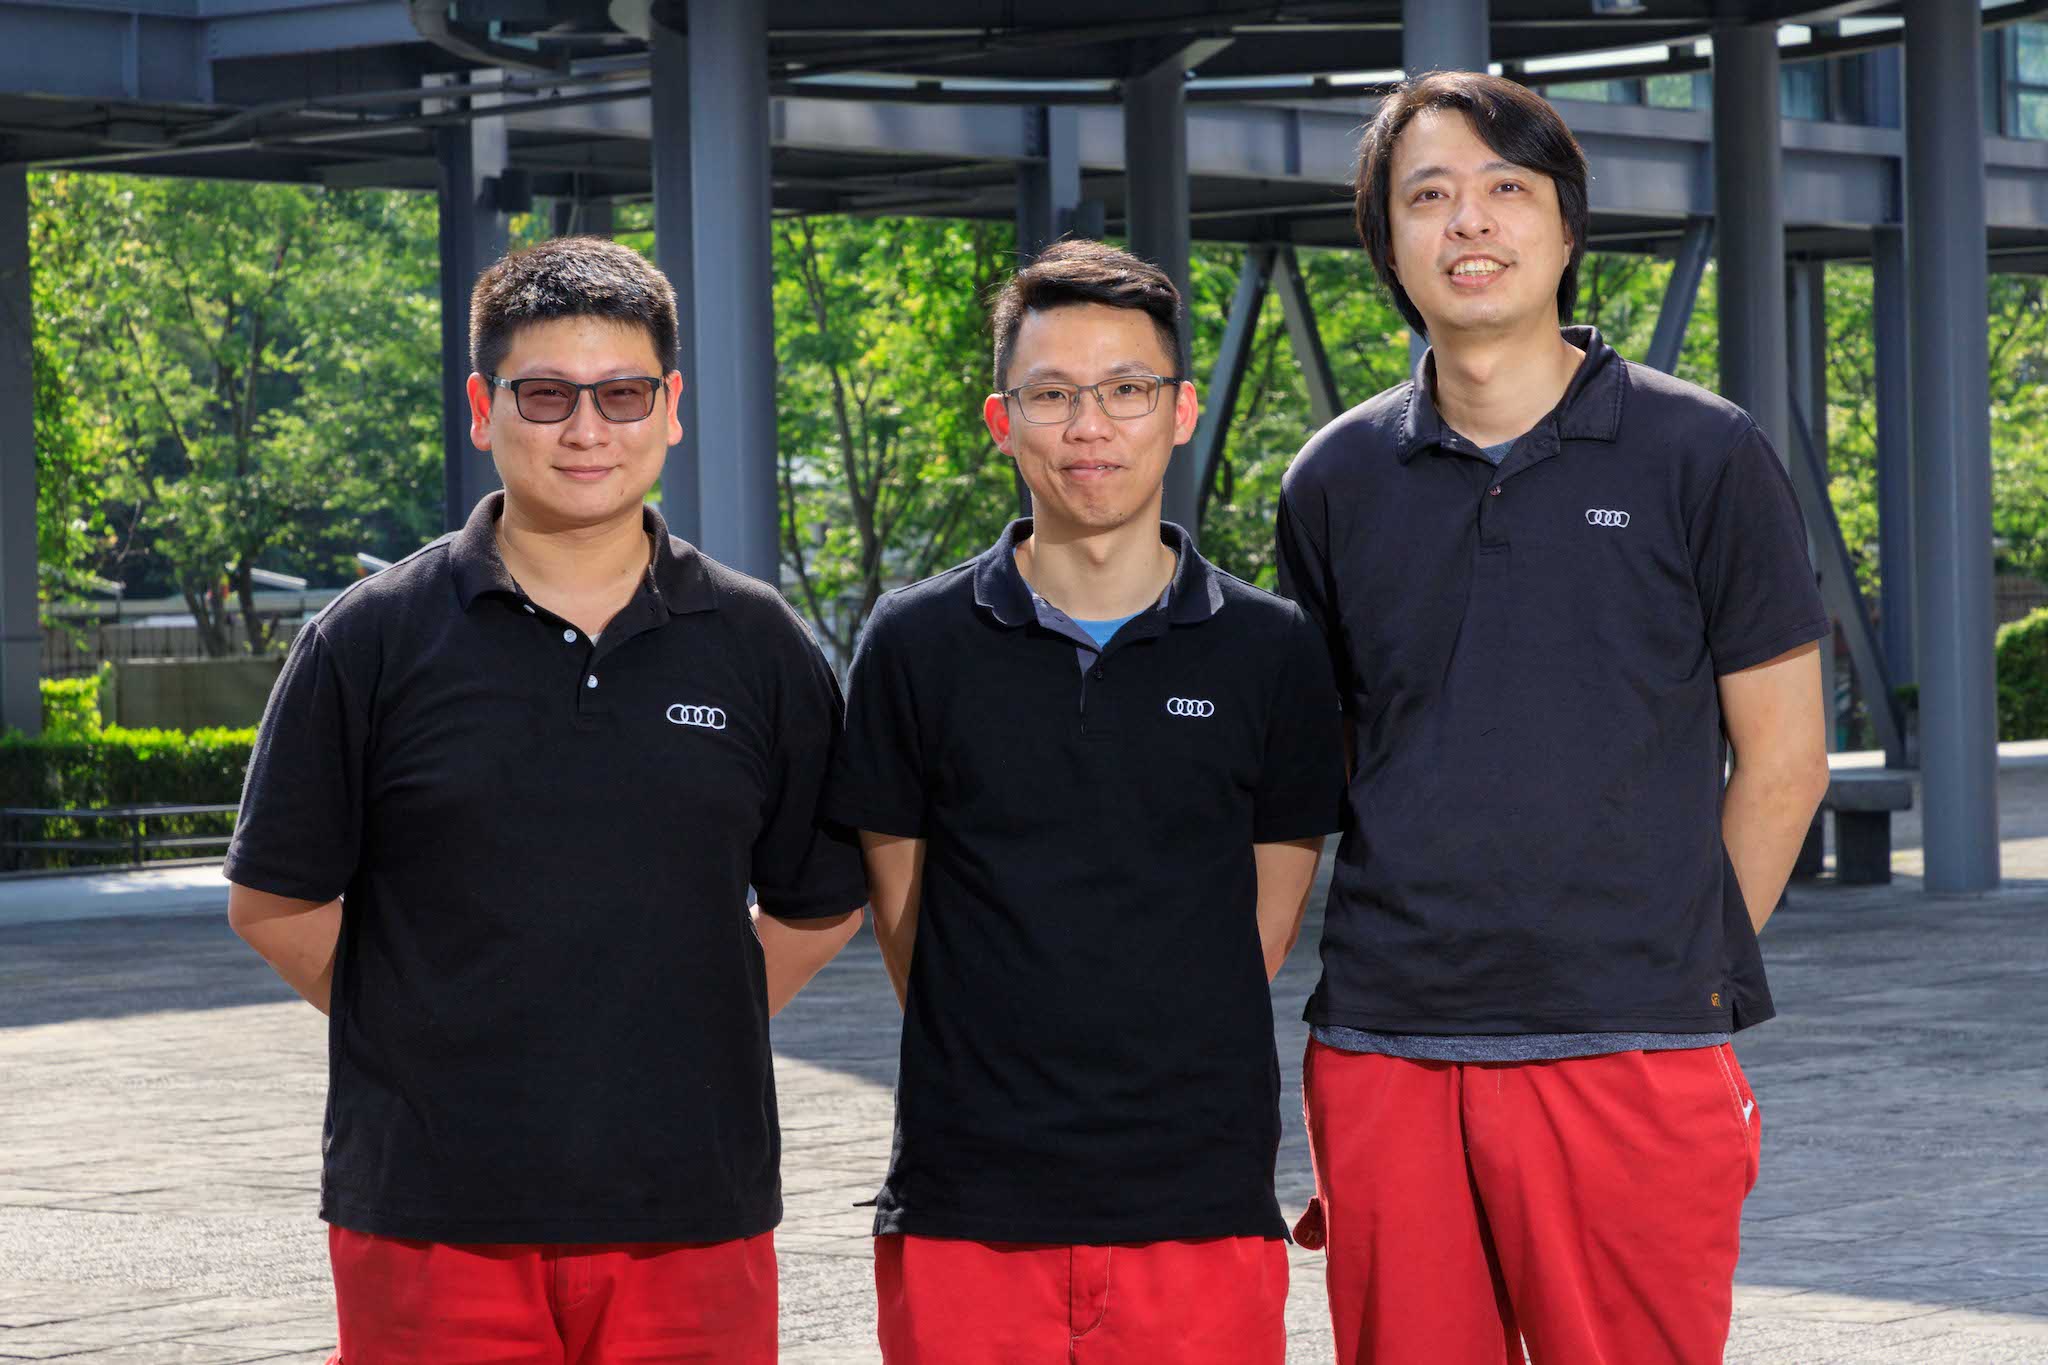 技術組選手，由左至右分別是：「Audi 南港」李承錦、「Audi 南港」李安逵、「Audi桃園」游順帆。